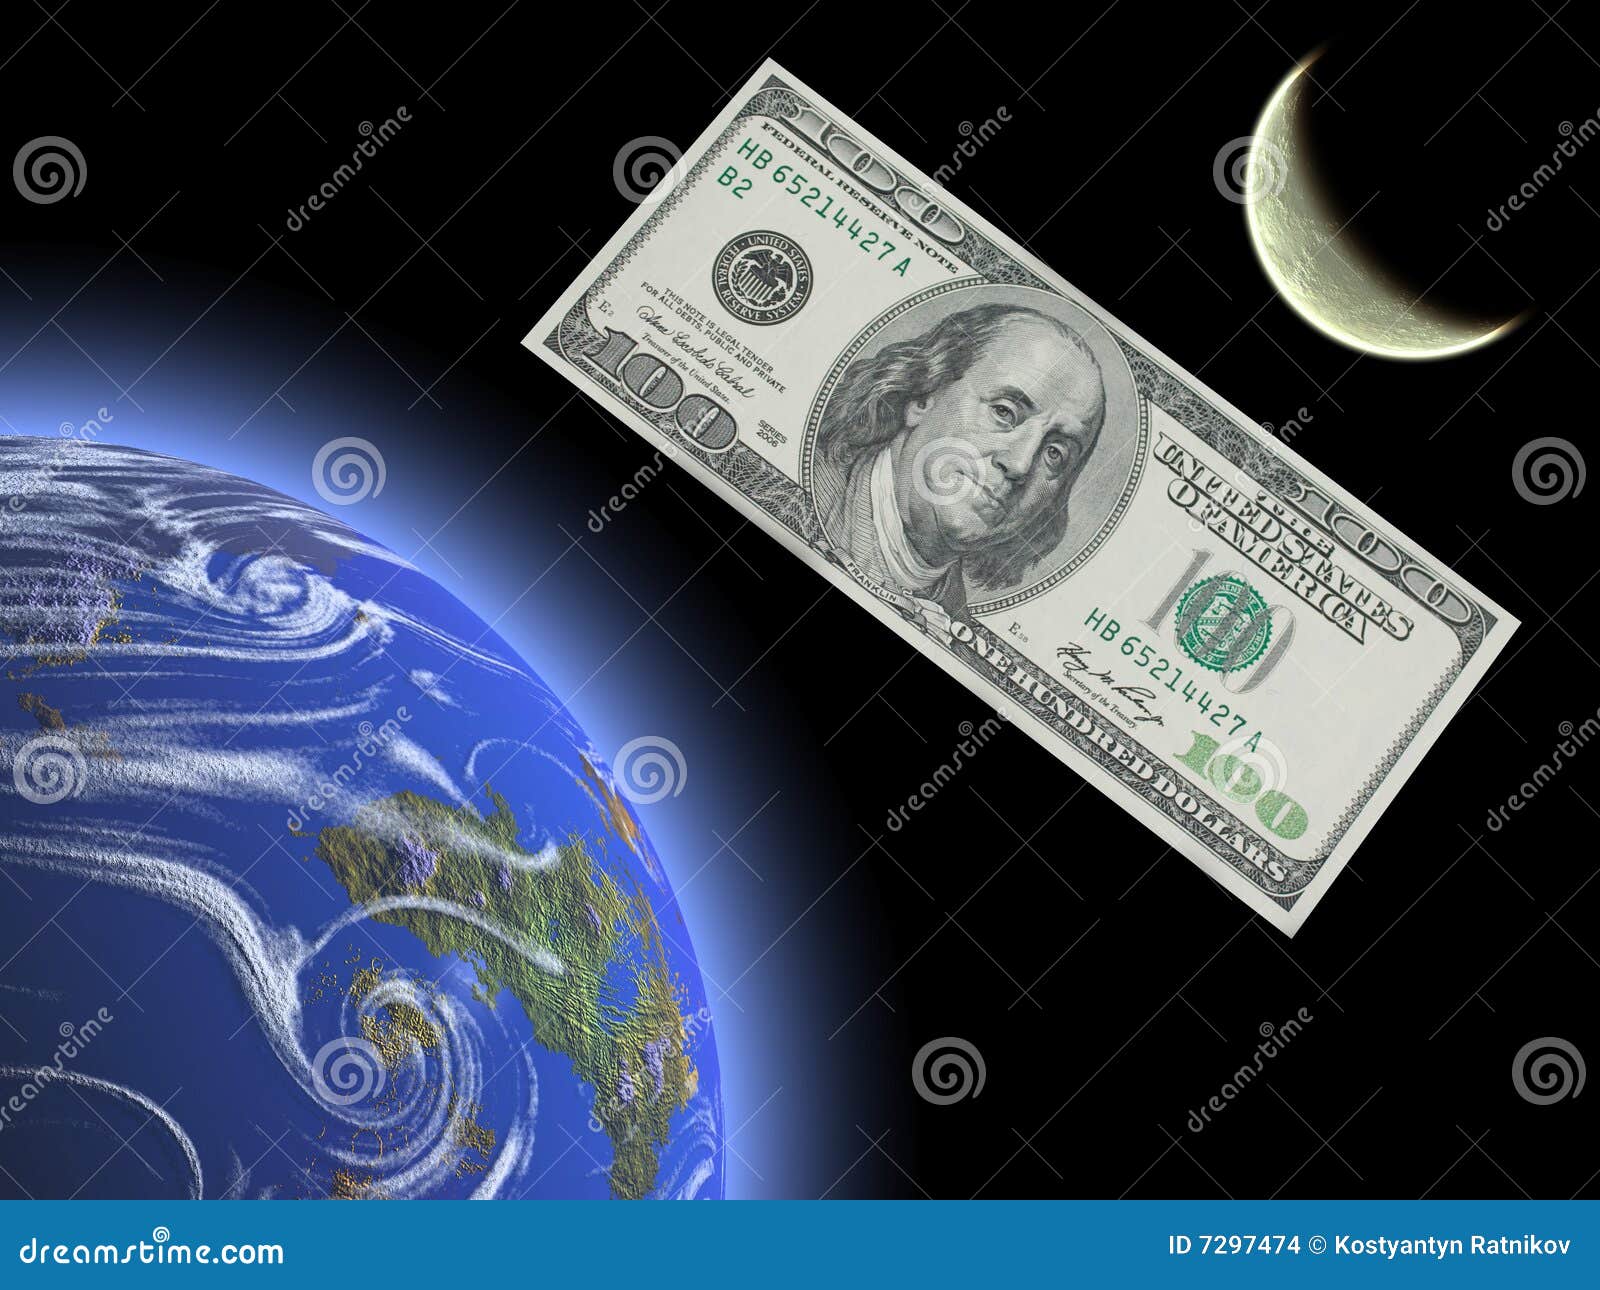 O dinheiro é satélites dos povos. Dois planetas azuis e amarelos no fundo preto. Cem dólares que voam no espaço.